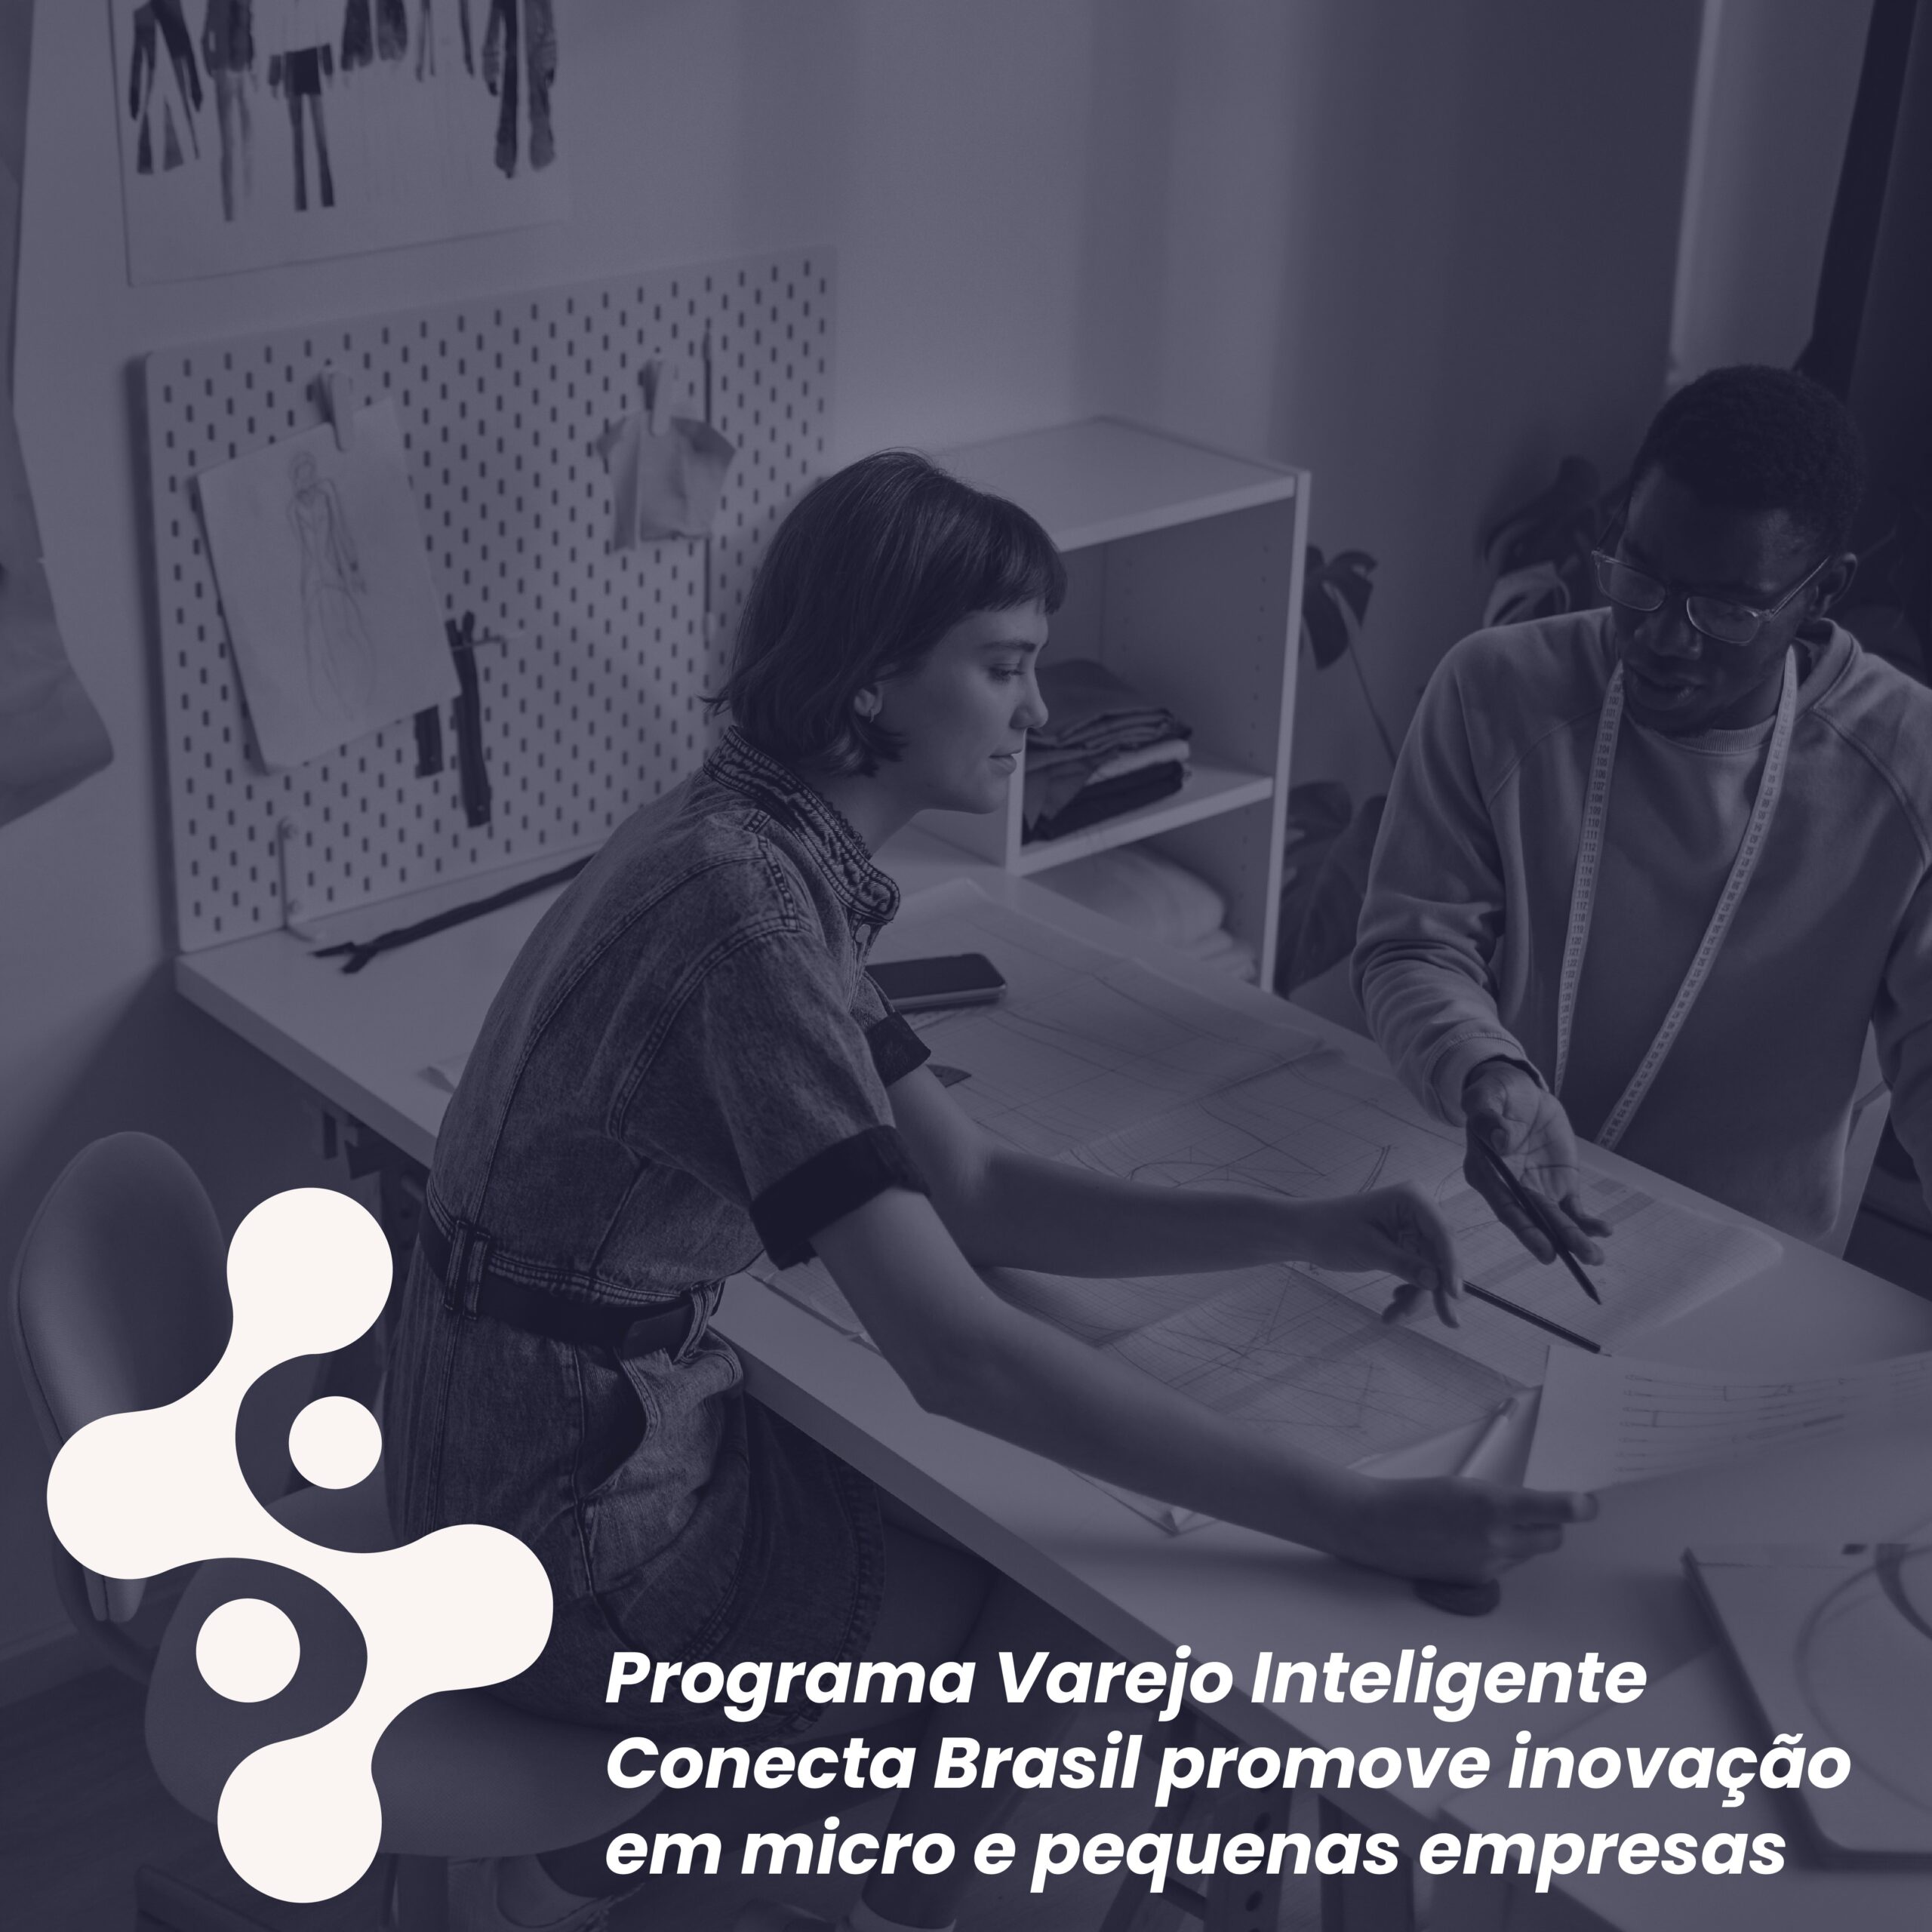 Programa Varejo Inteligente Conecta Brasil promove inovação em micro e pequenas empresas